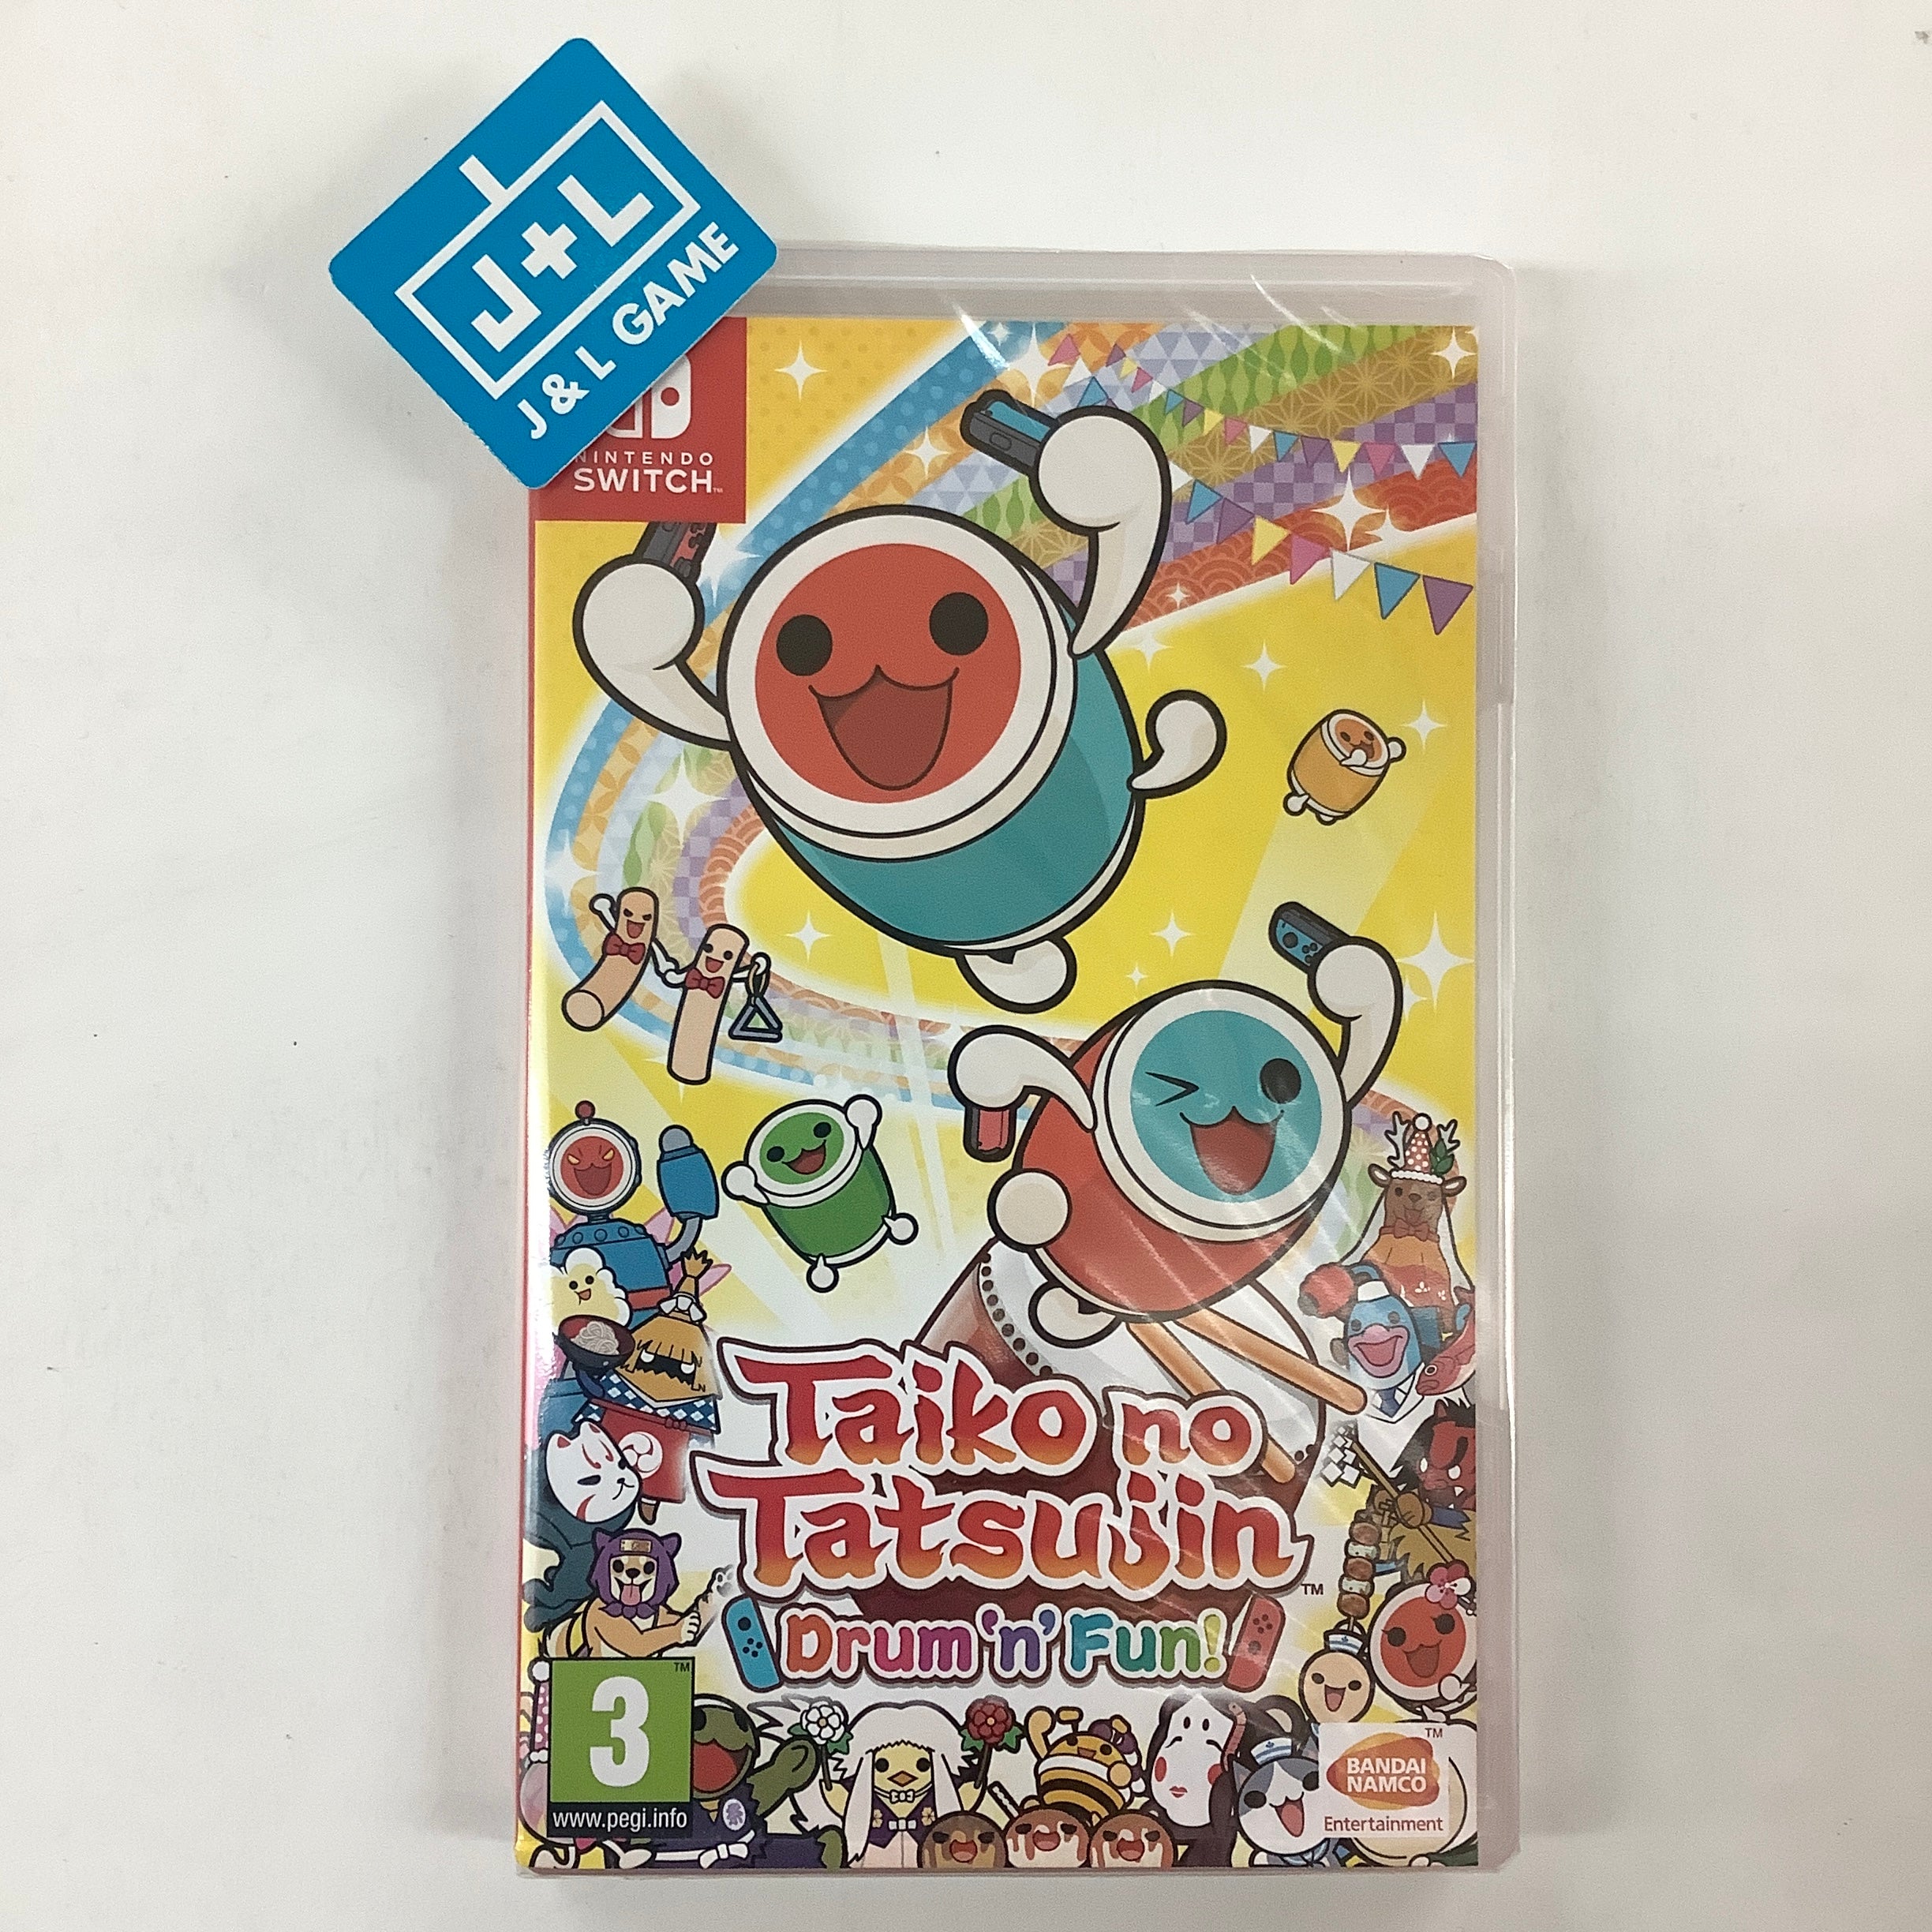 Taiko no Tatsujin: Drum 'n' Fun! - (NSW) Nintendo Switch (European Import) Video Games Namco Bandai   